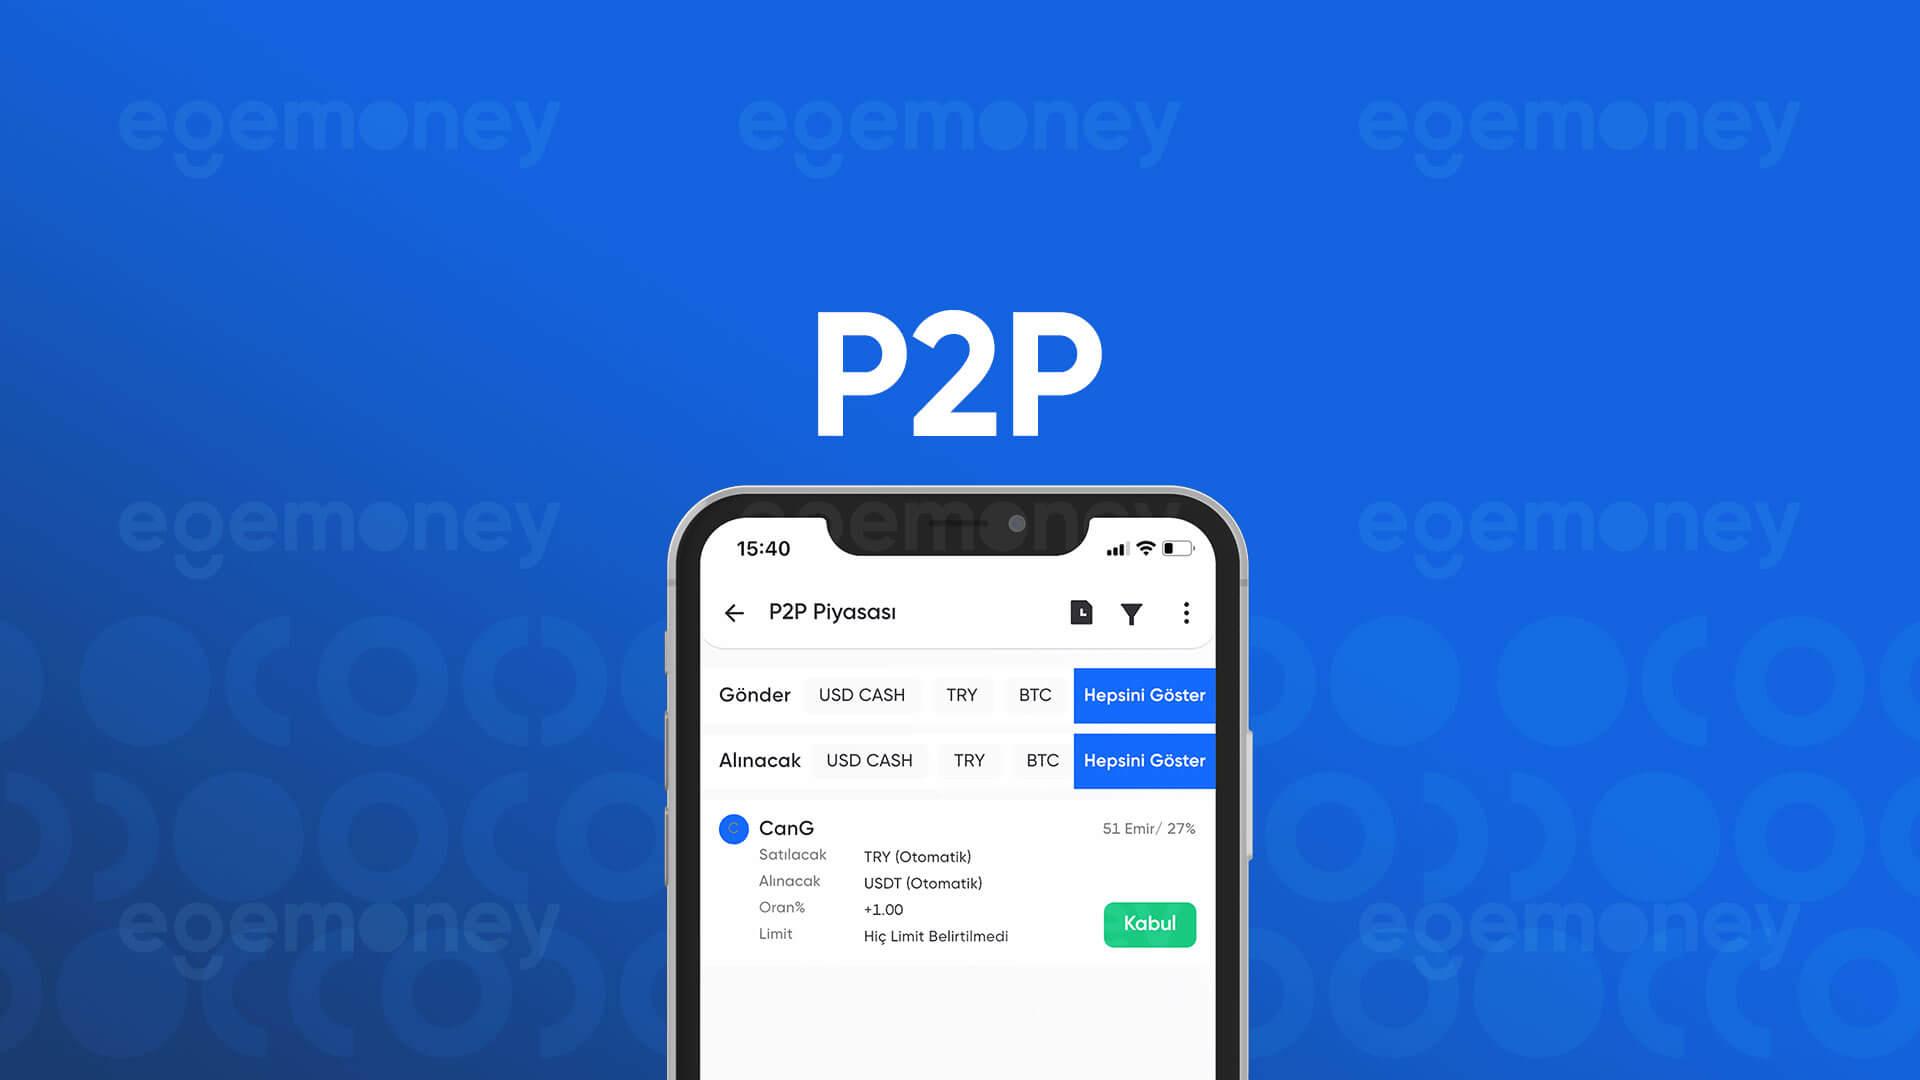 P2P Piyasası Artık EgeMoney Mobil Uygulamasında!